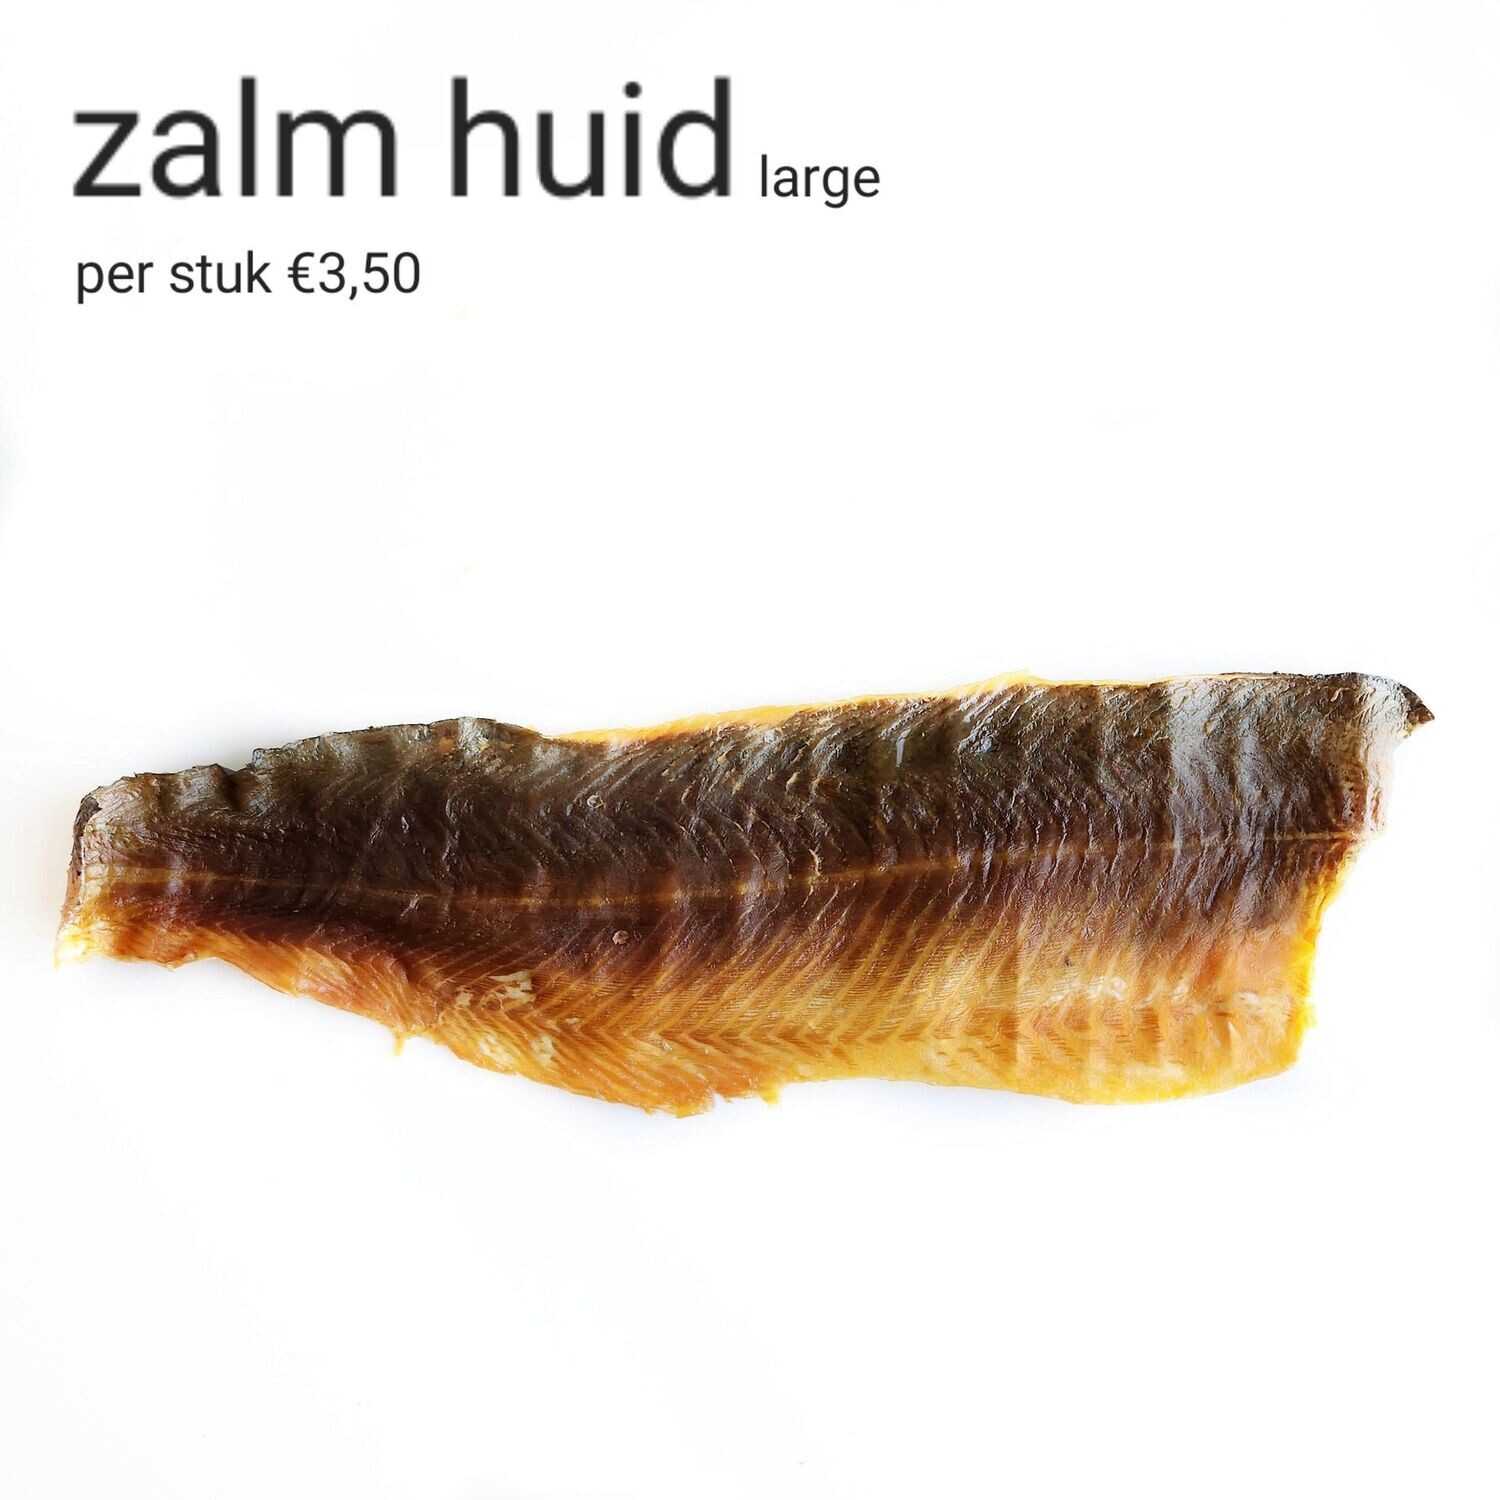 Zalmhuid large